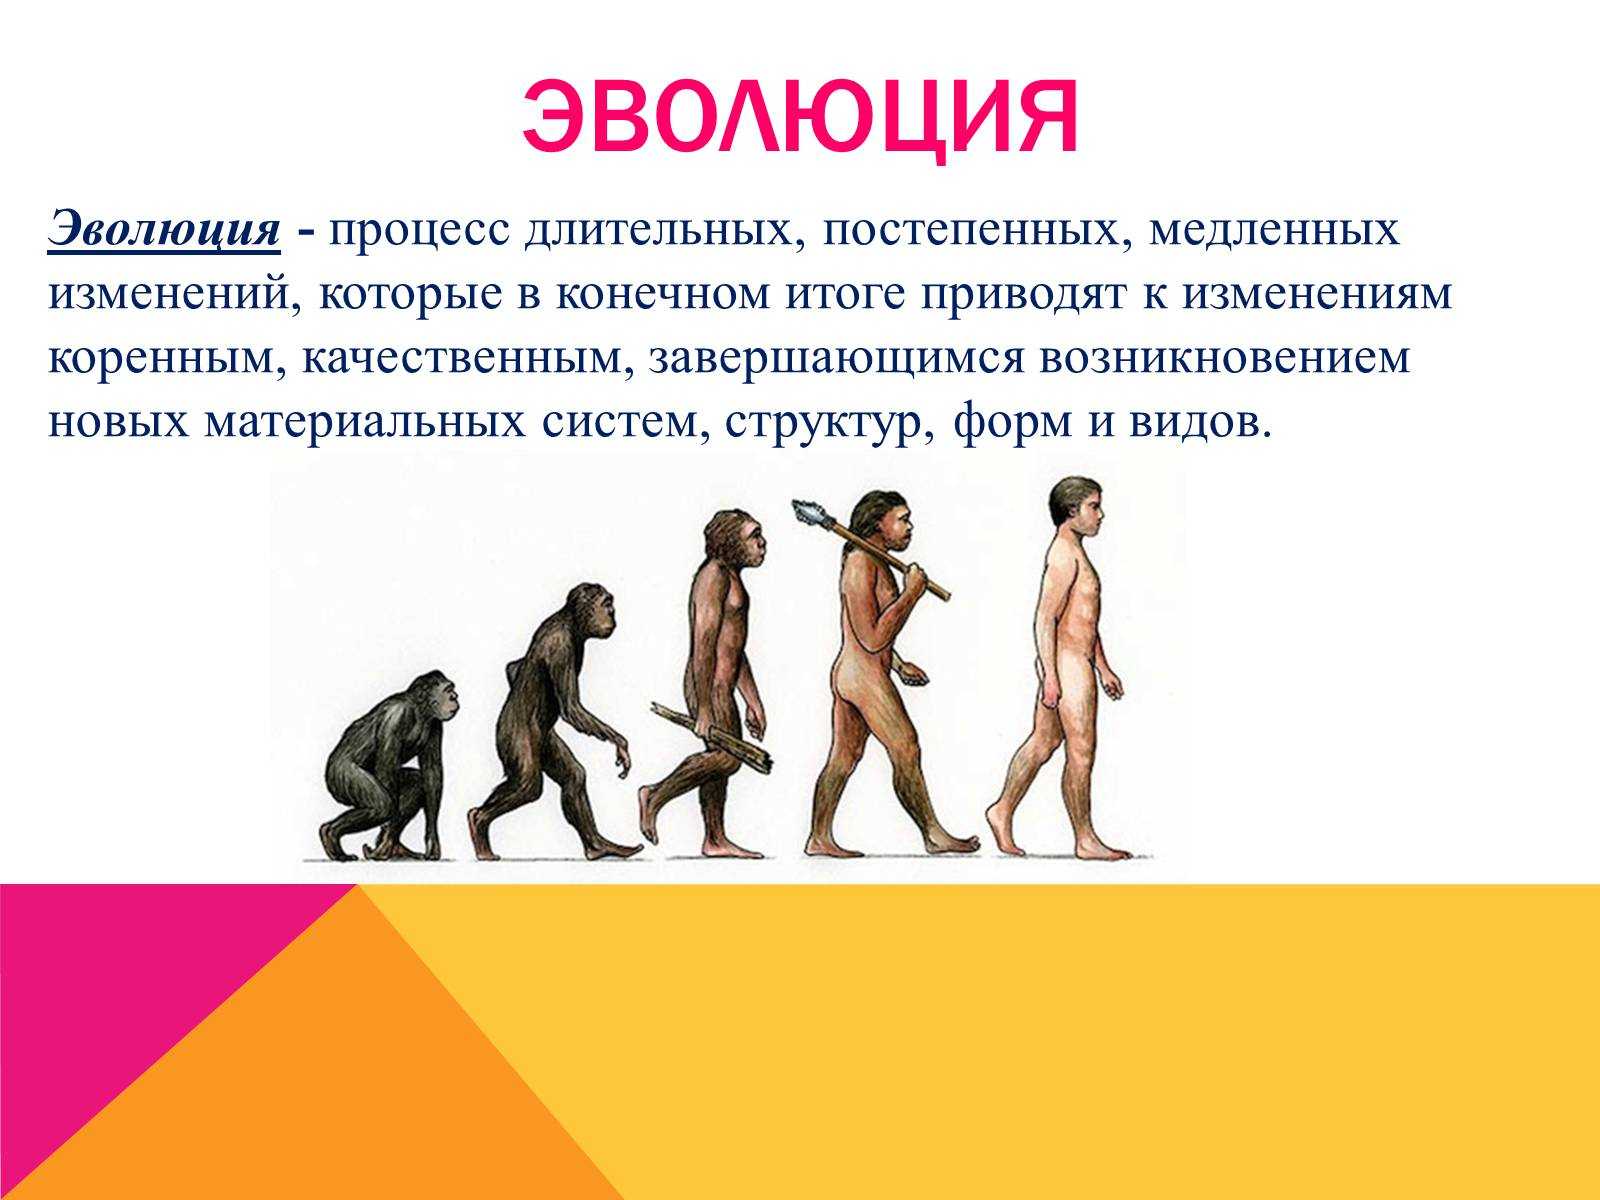 Эволюция человека и этапы развития